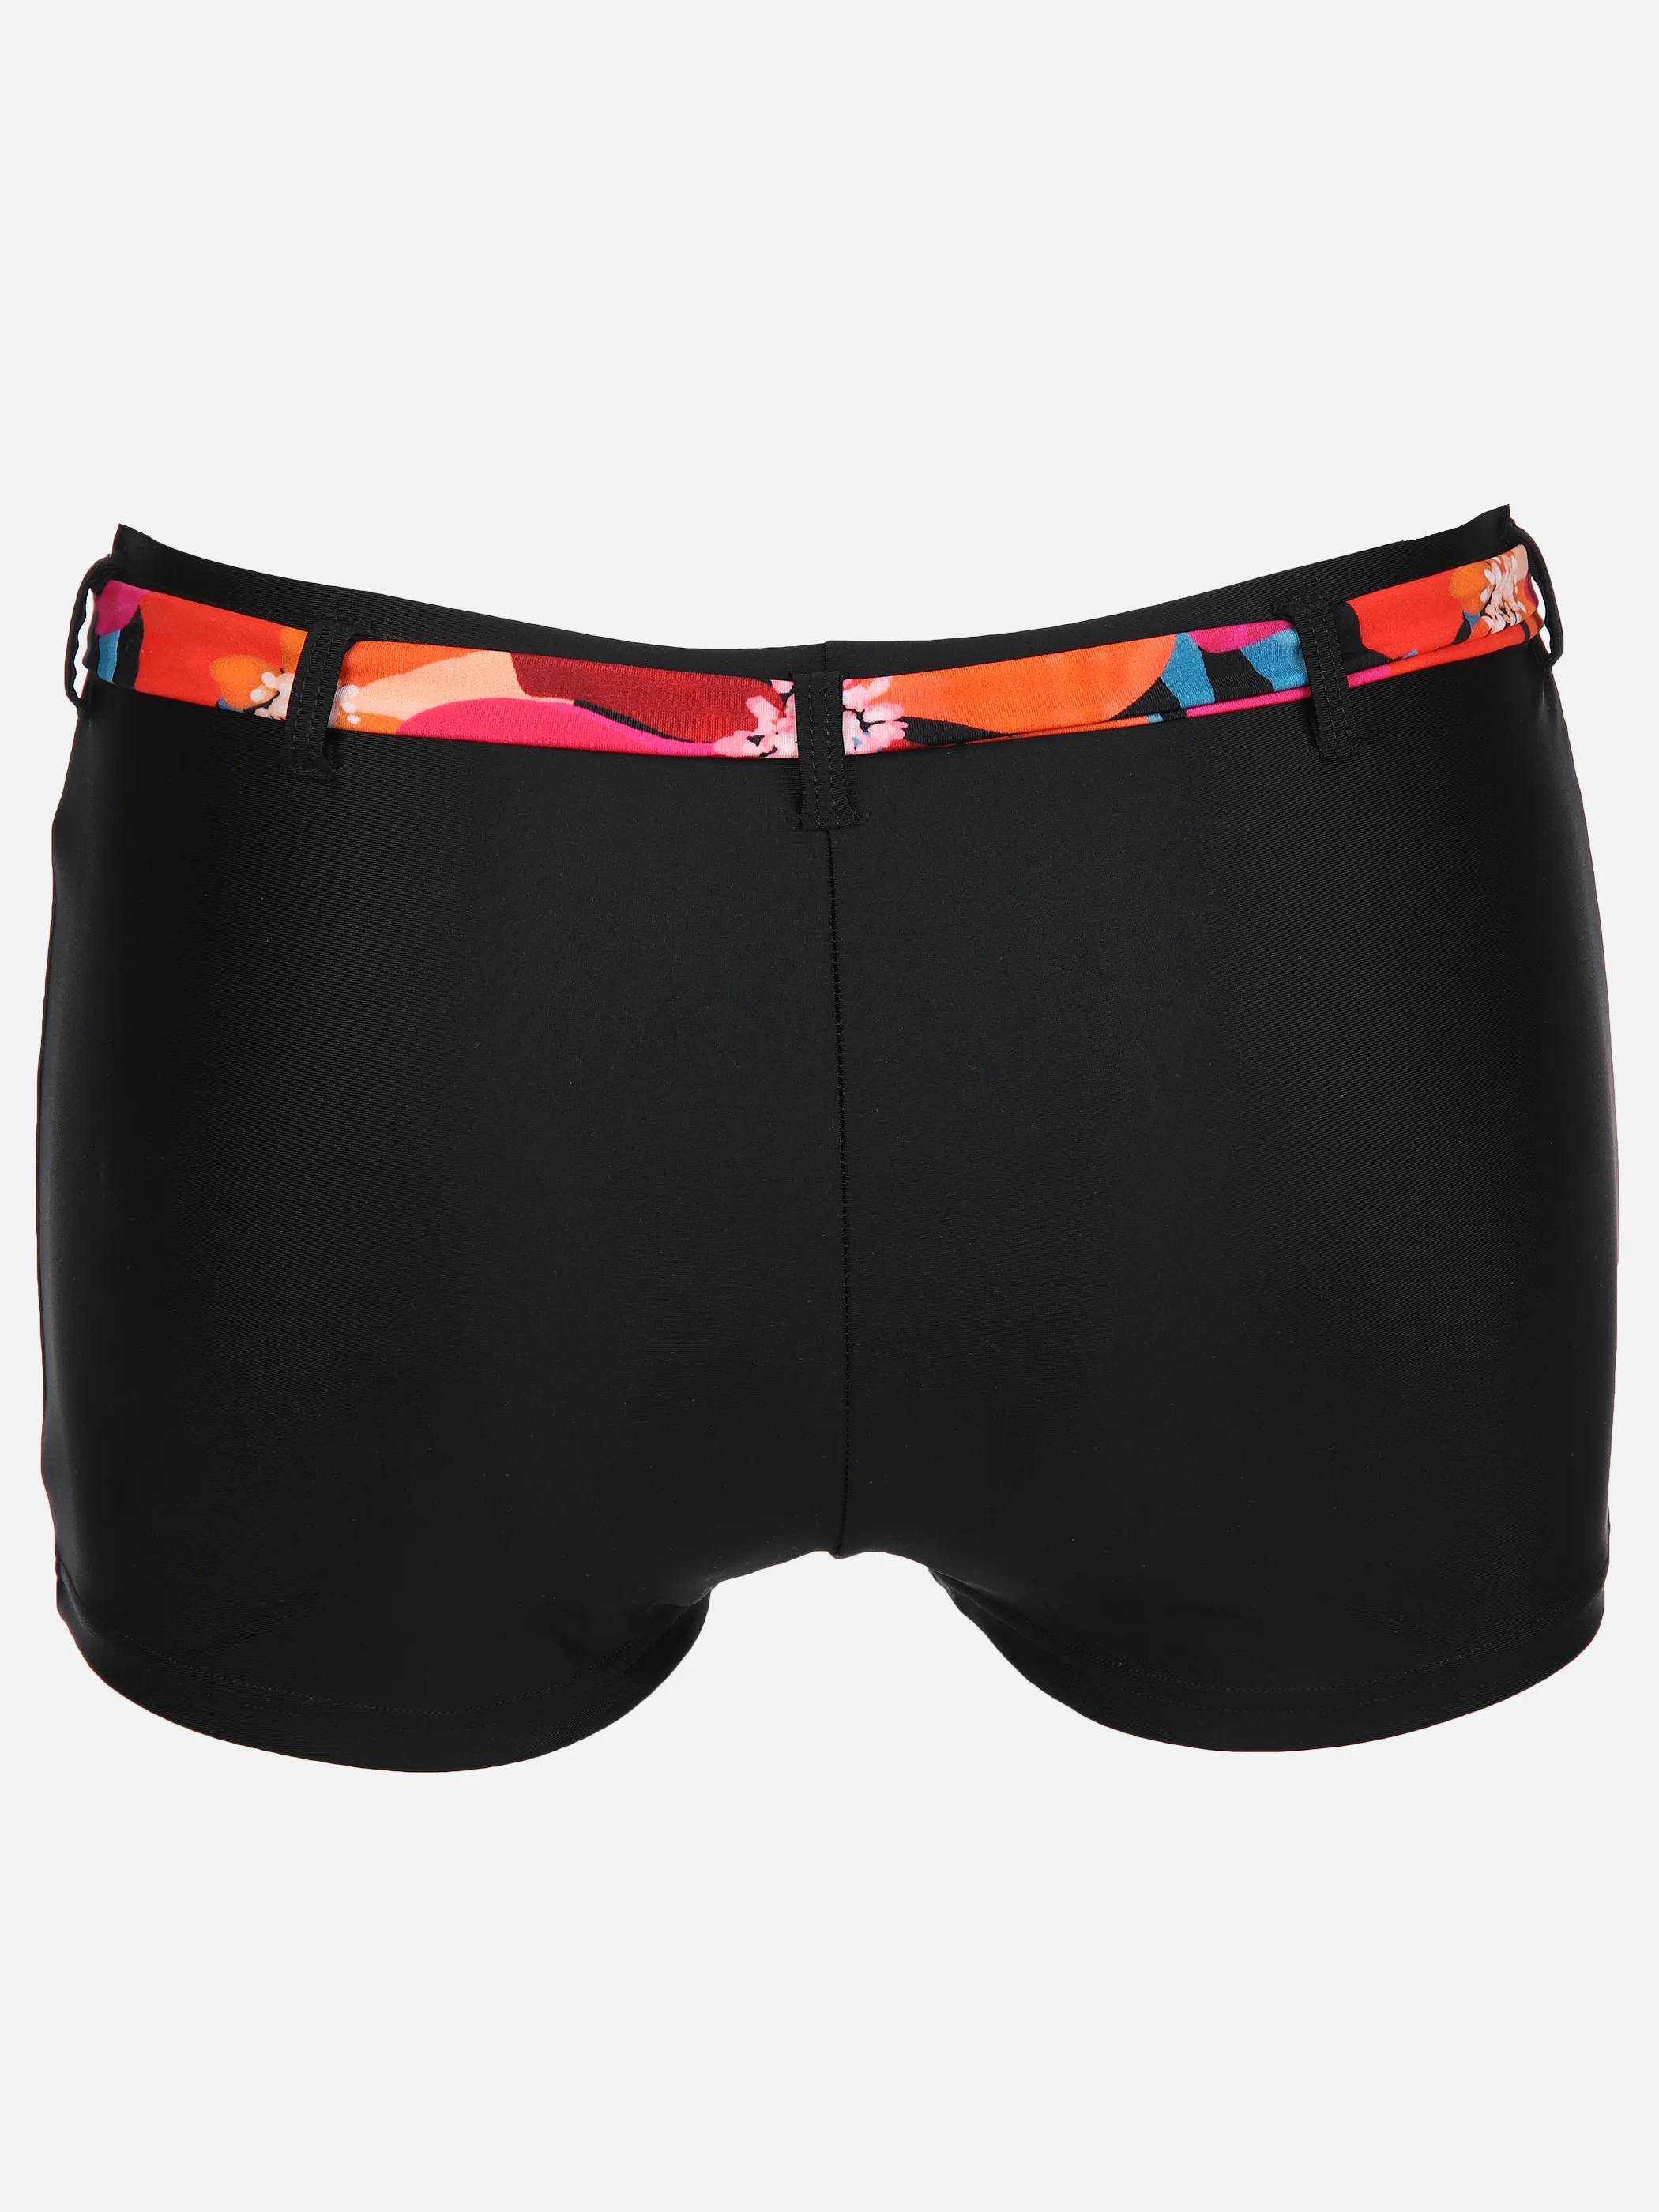 Grinario Sports Da-Bikini Shorts mit Bindeband Schwarz 890116 BLACK/AOP 2